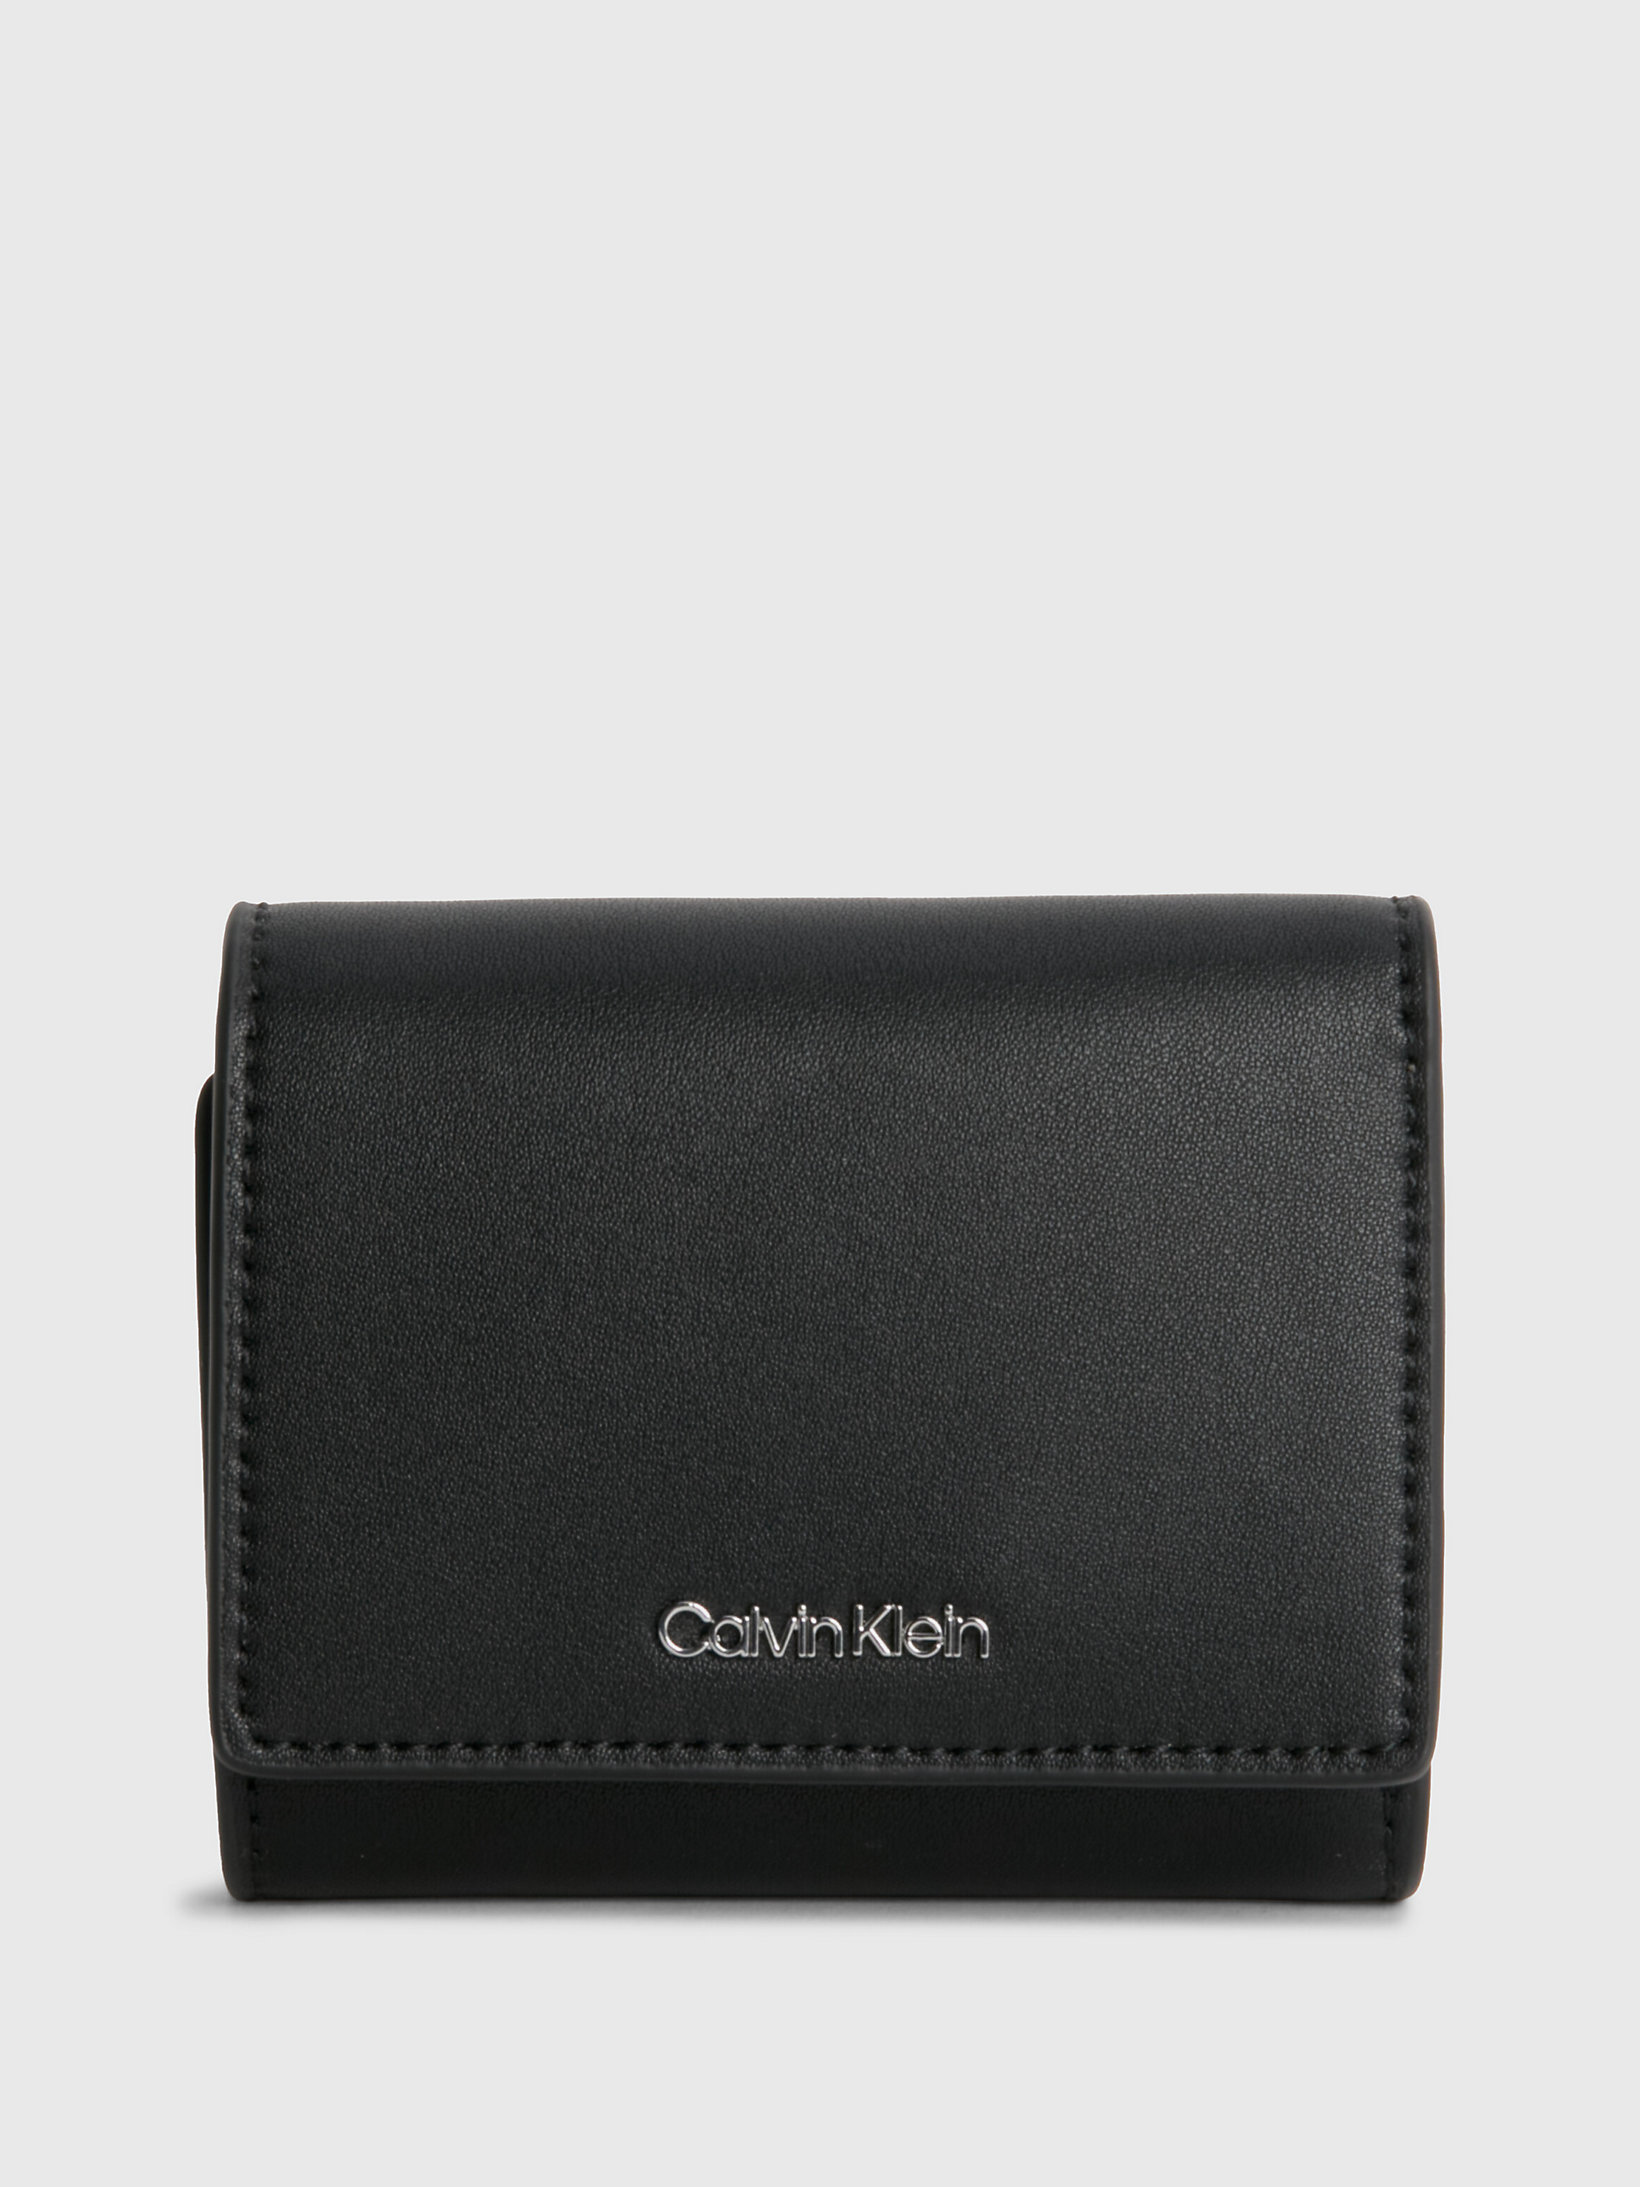 CK Black Dreifach Faltbares Kleines Portemonnaie Aus Recyceltem Material undefined Damen Calvin Klein